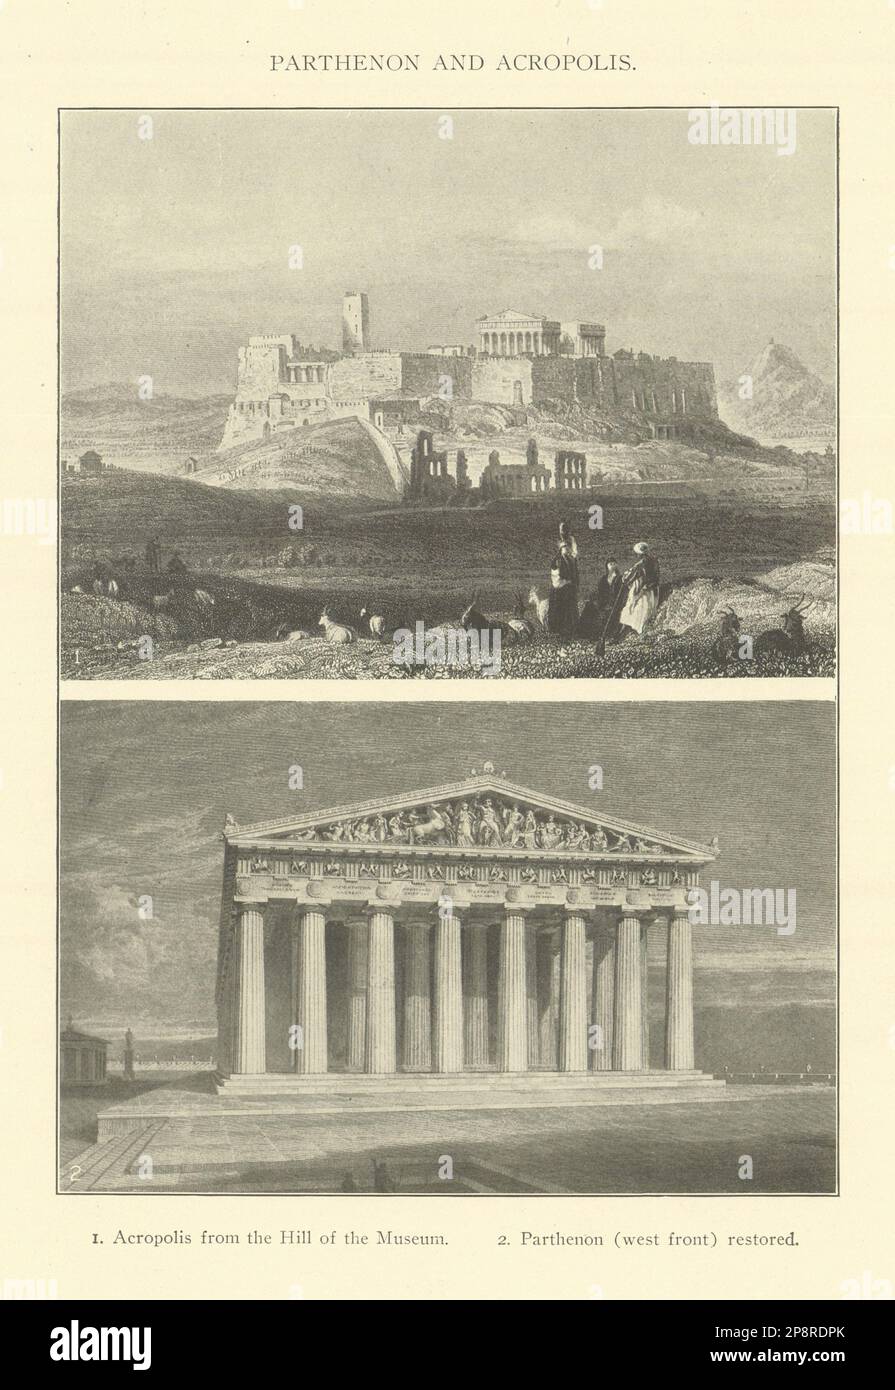 AKROPOLIS VON ATHEN vom Hügel des Museums. Die Westfront des Parthenon wurde 1907 restauriert Stockfoto